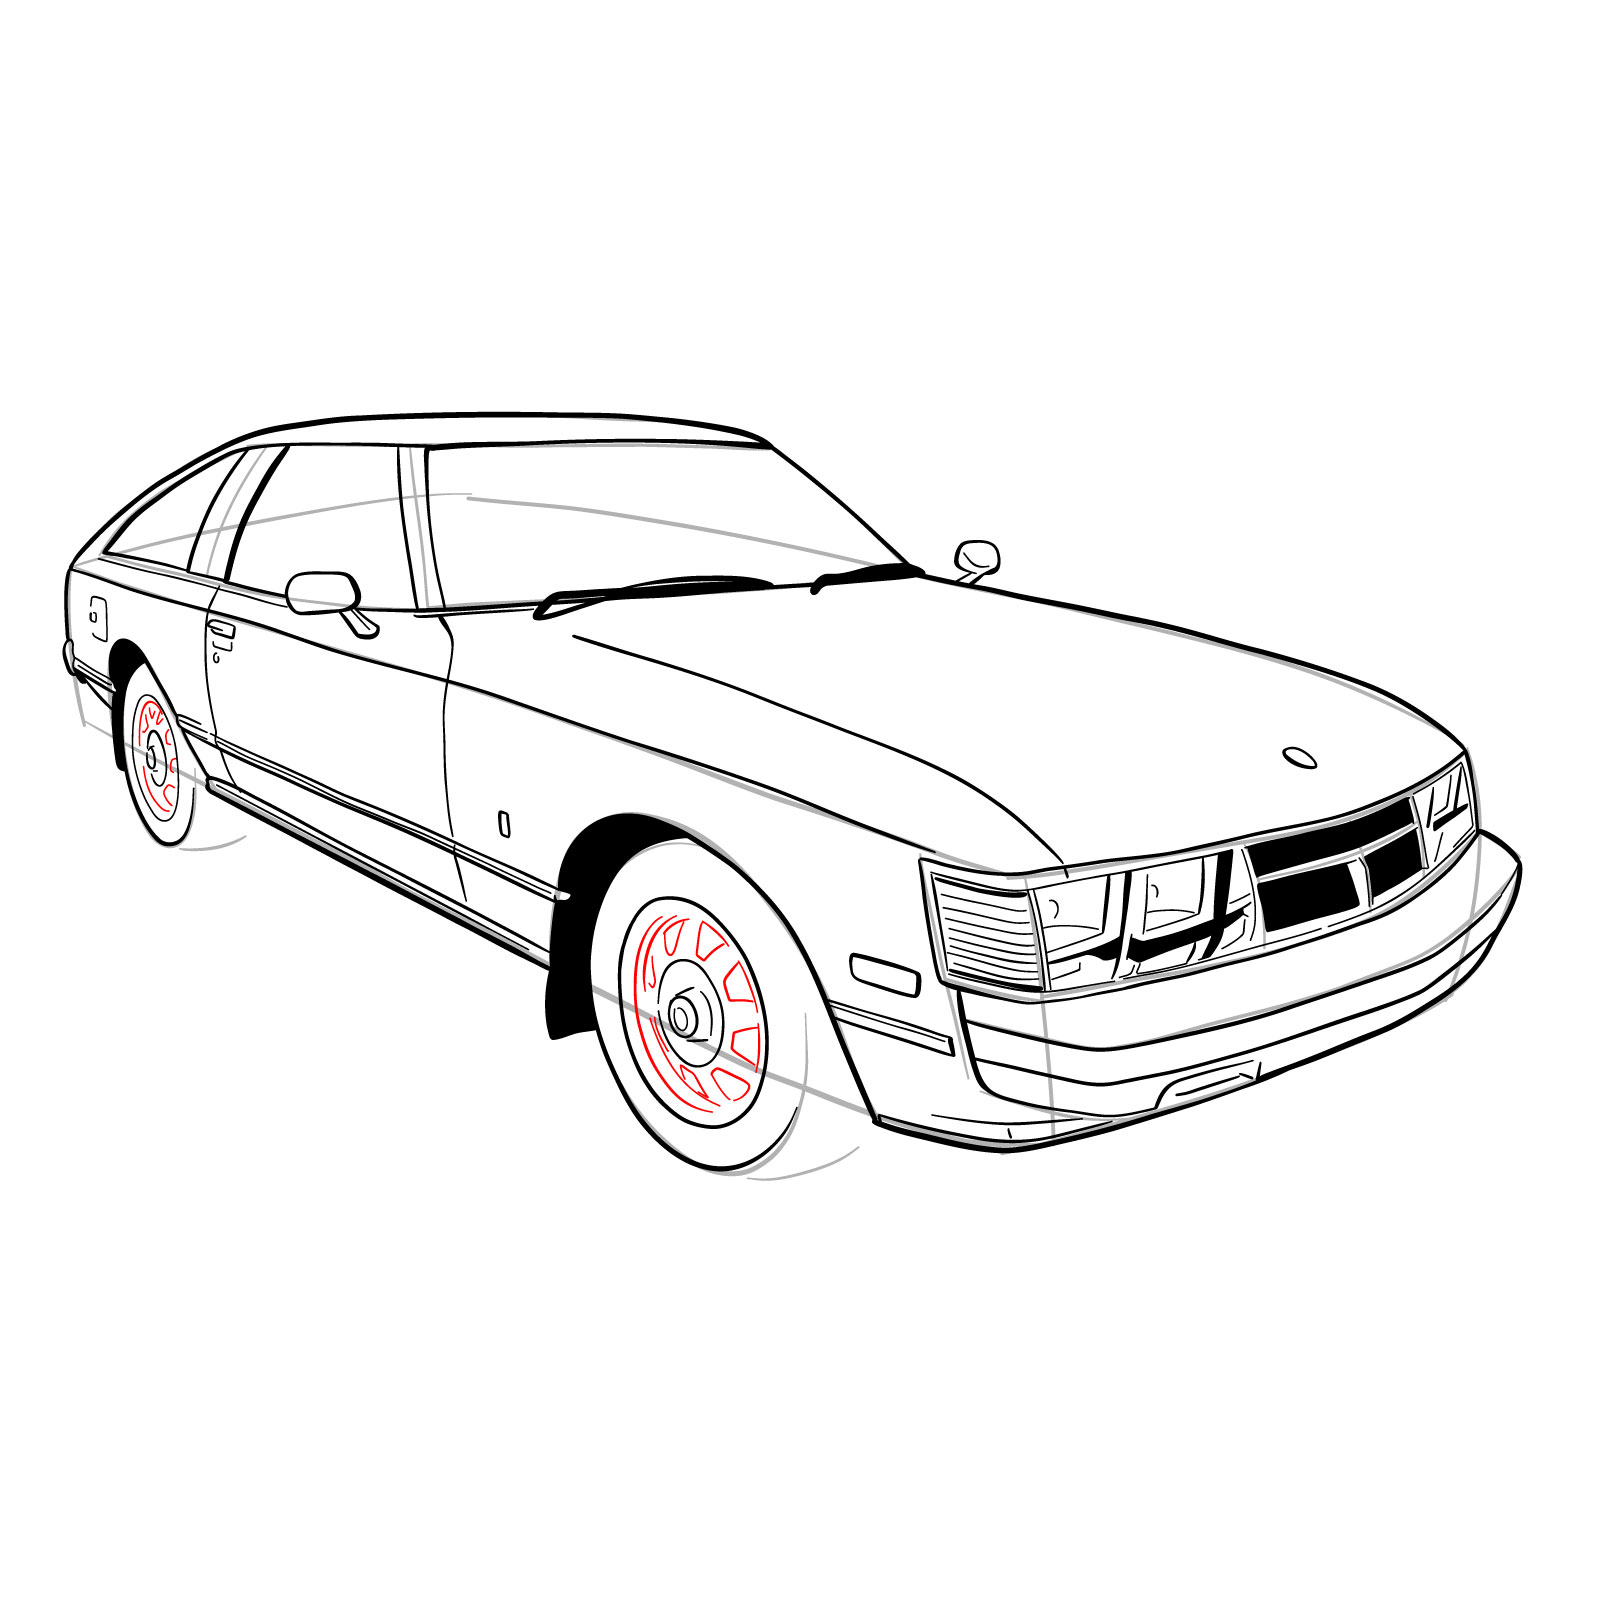 How to draw a 1979 Toyota Celica Supra Mk I Coupe - step 29